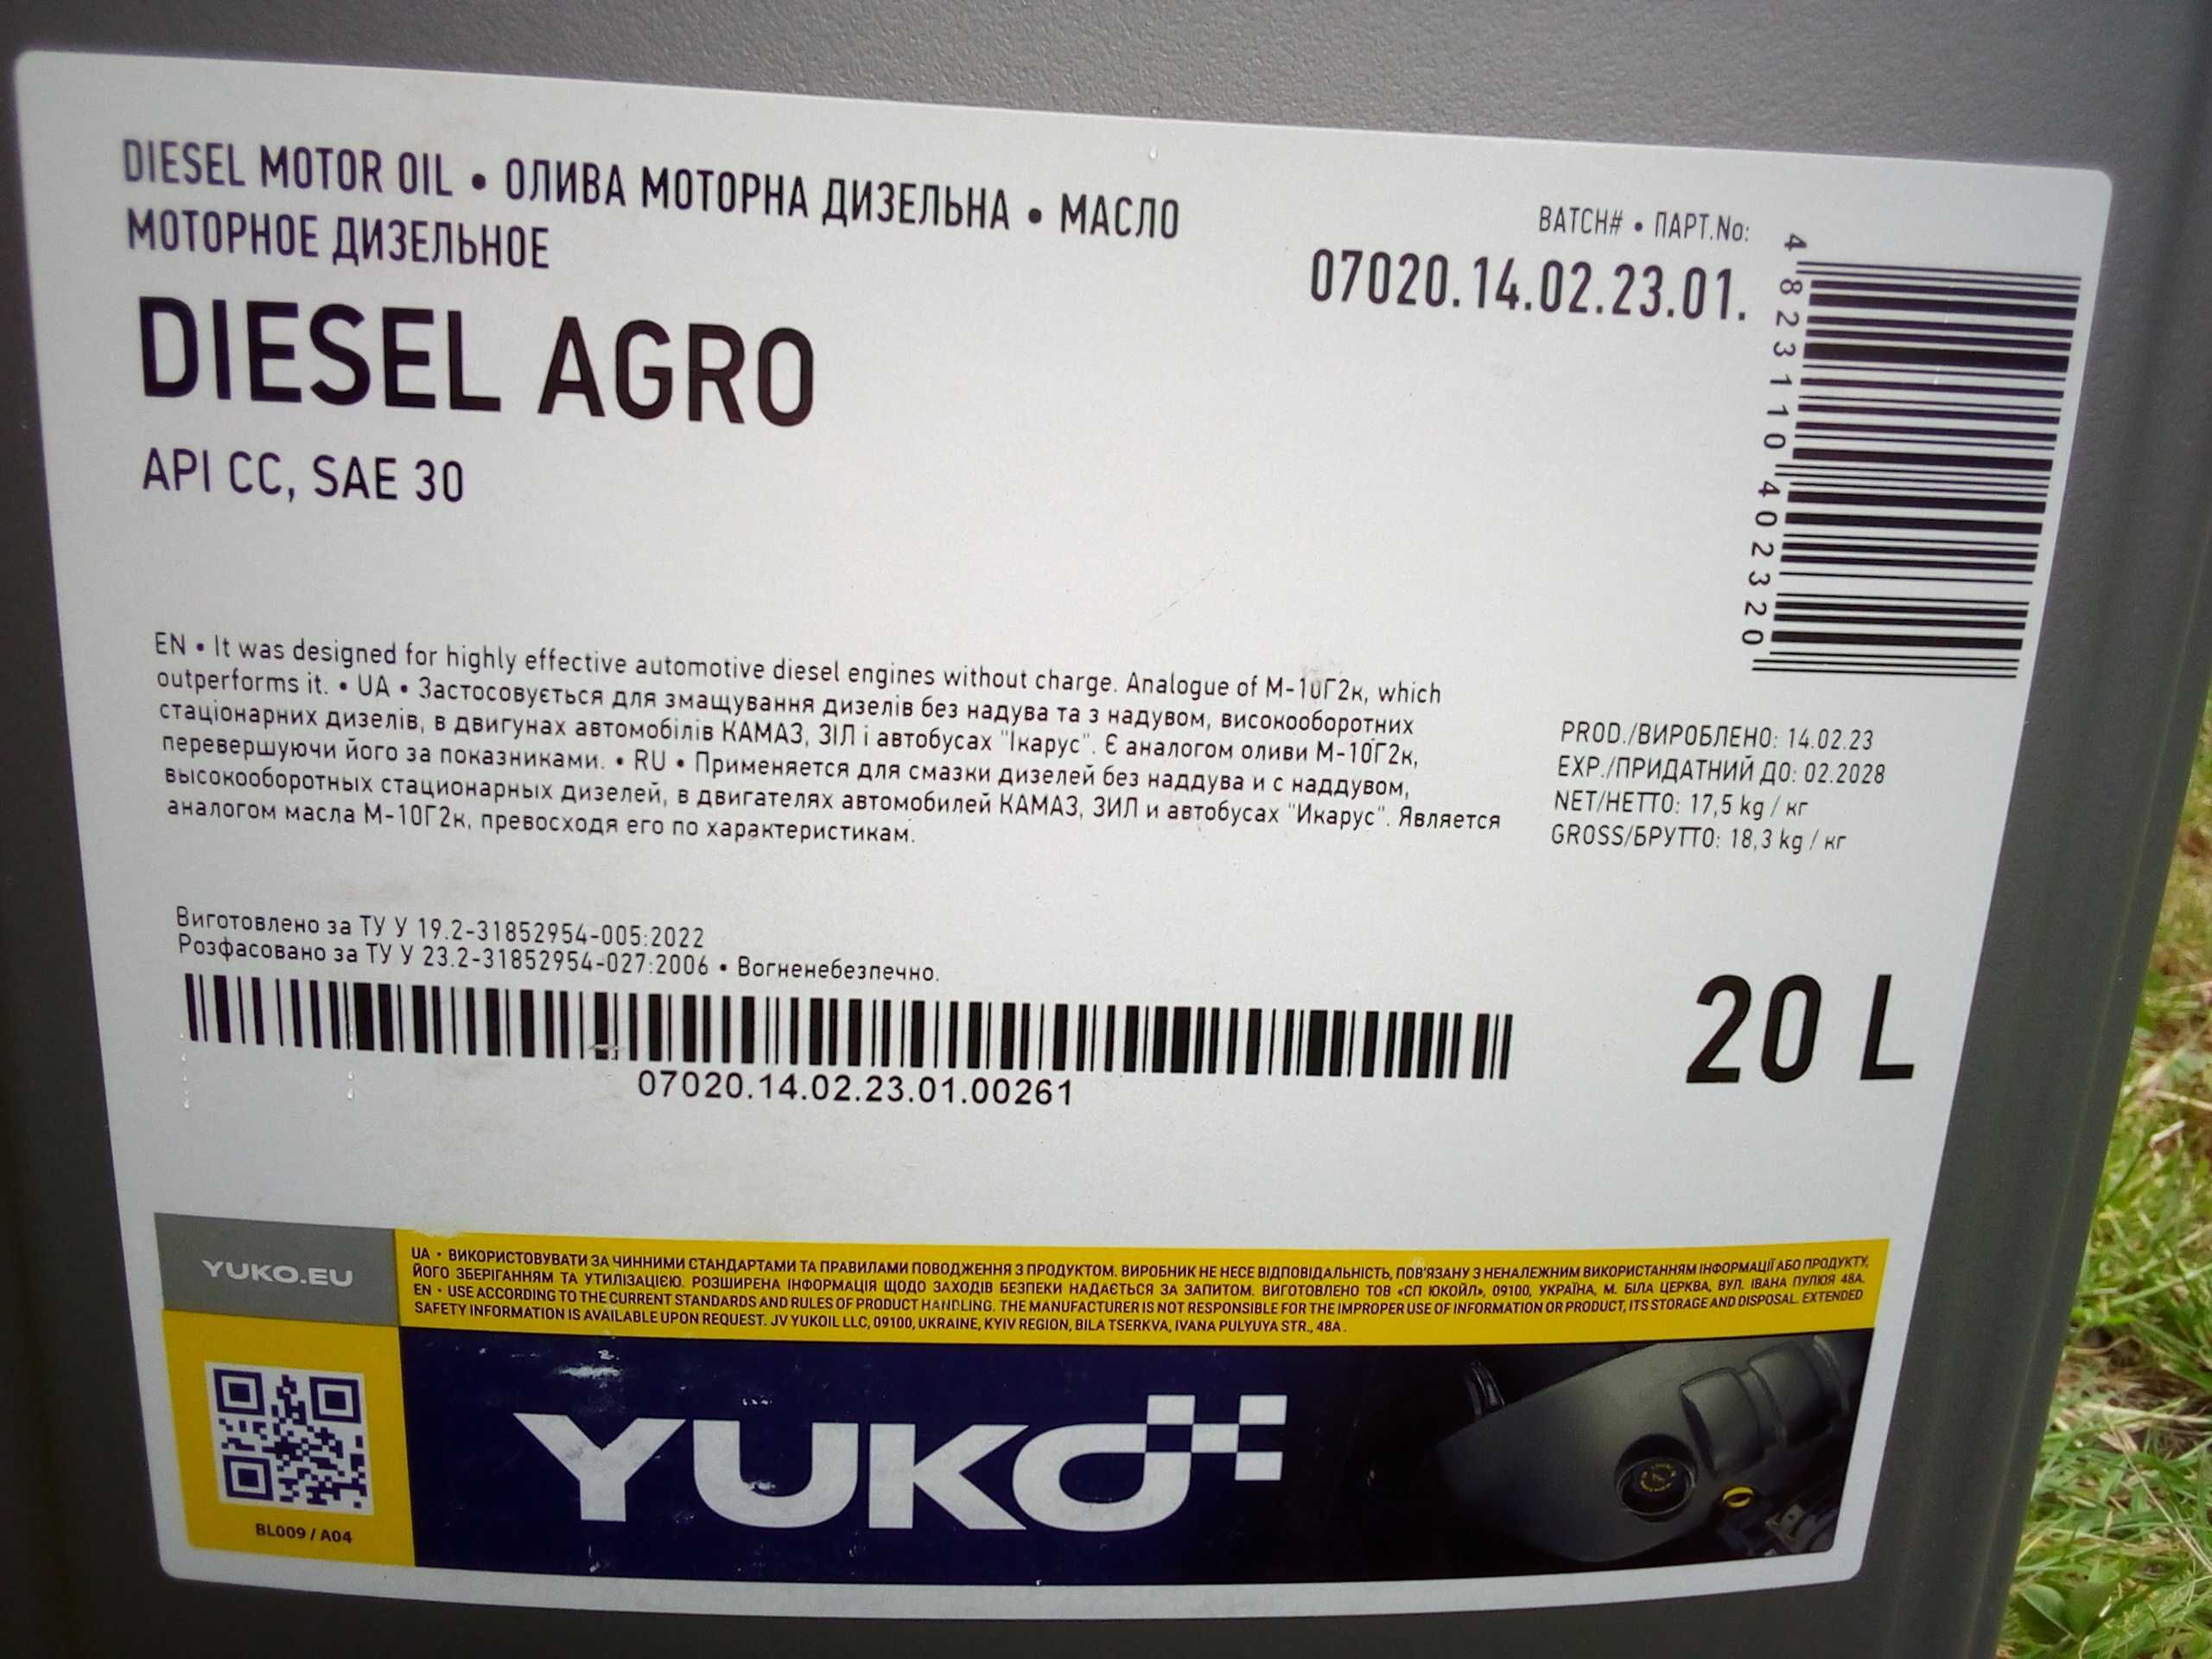 Масло дизельное YUKO DIESEL AGRO (API CC) аналог М-10Г2к 20л